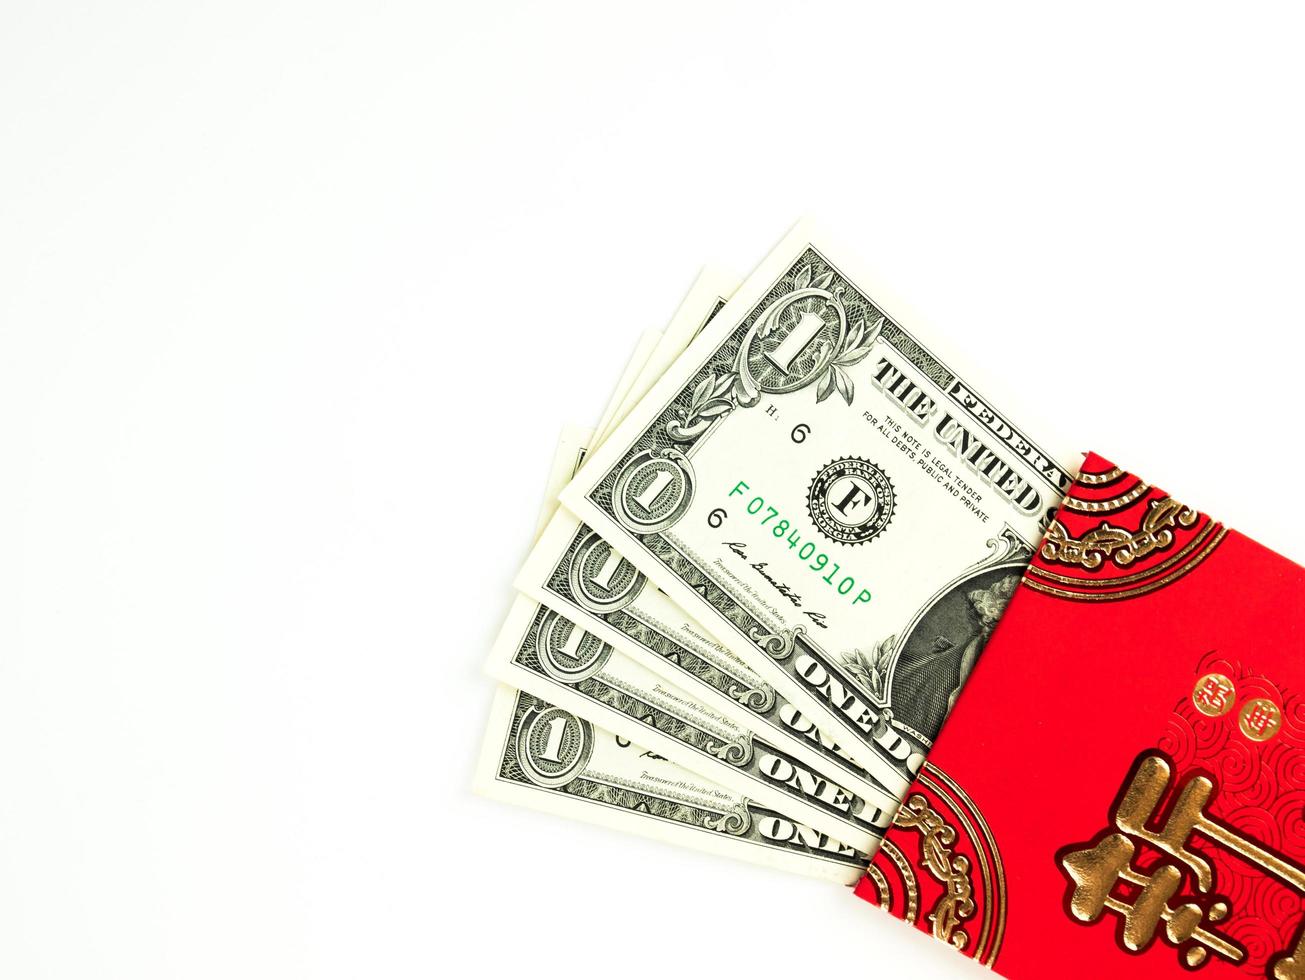 rött kuvert isolerad på vit bakgrund med dollarpengar för gåva kinesiskt nyår. kinesisk text på kuvert som betyder gott kinesiskt nytt år foto